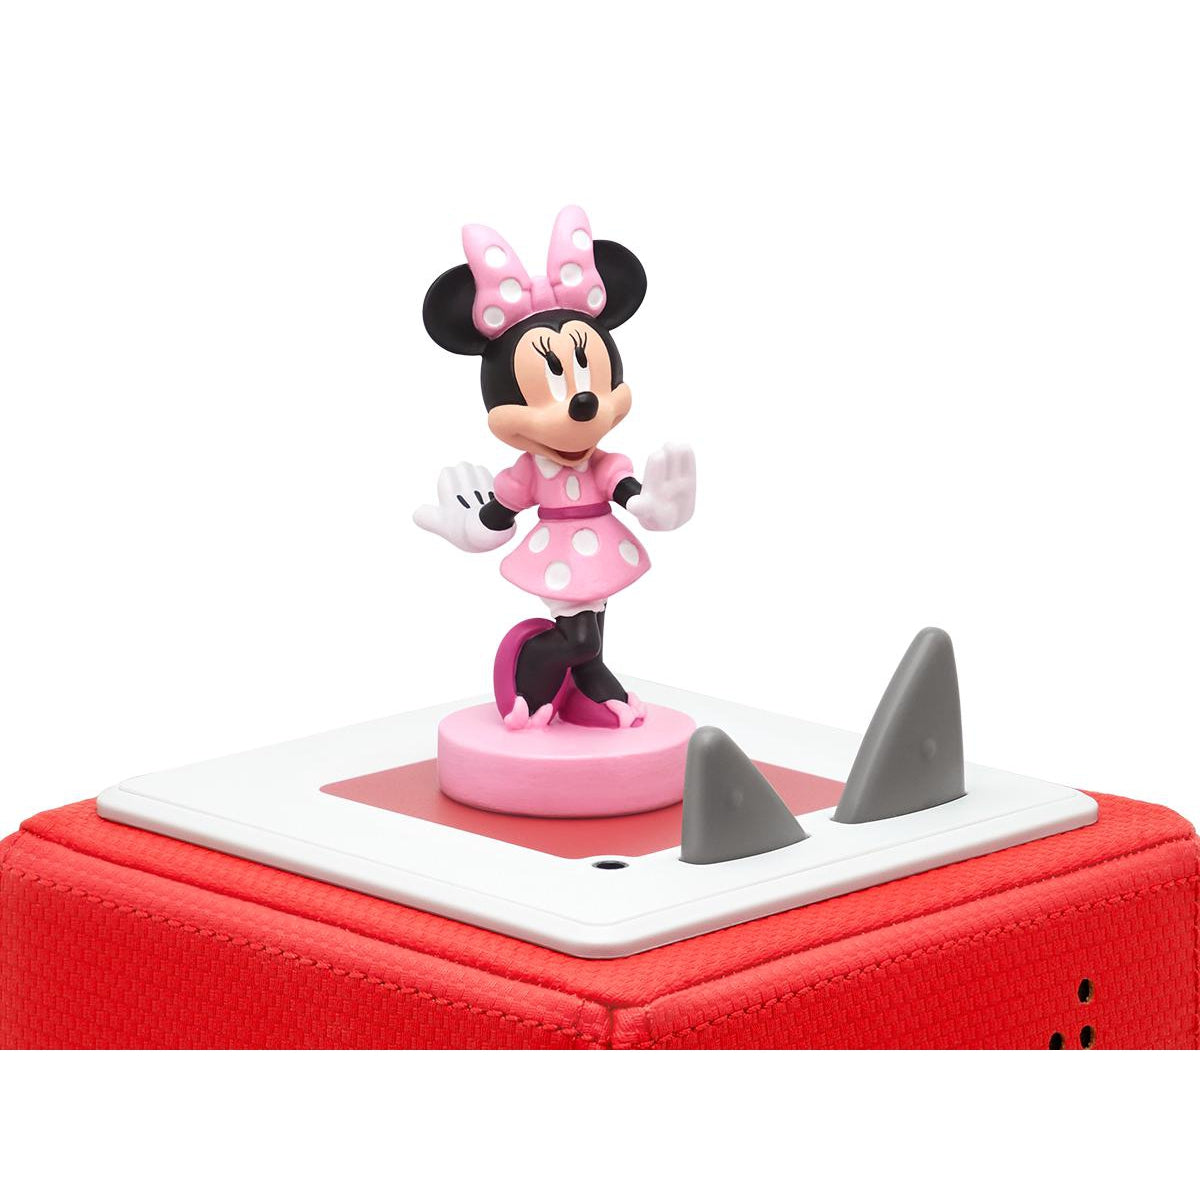 Disney Minnie - When We Grow Up Tonie Figure